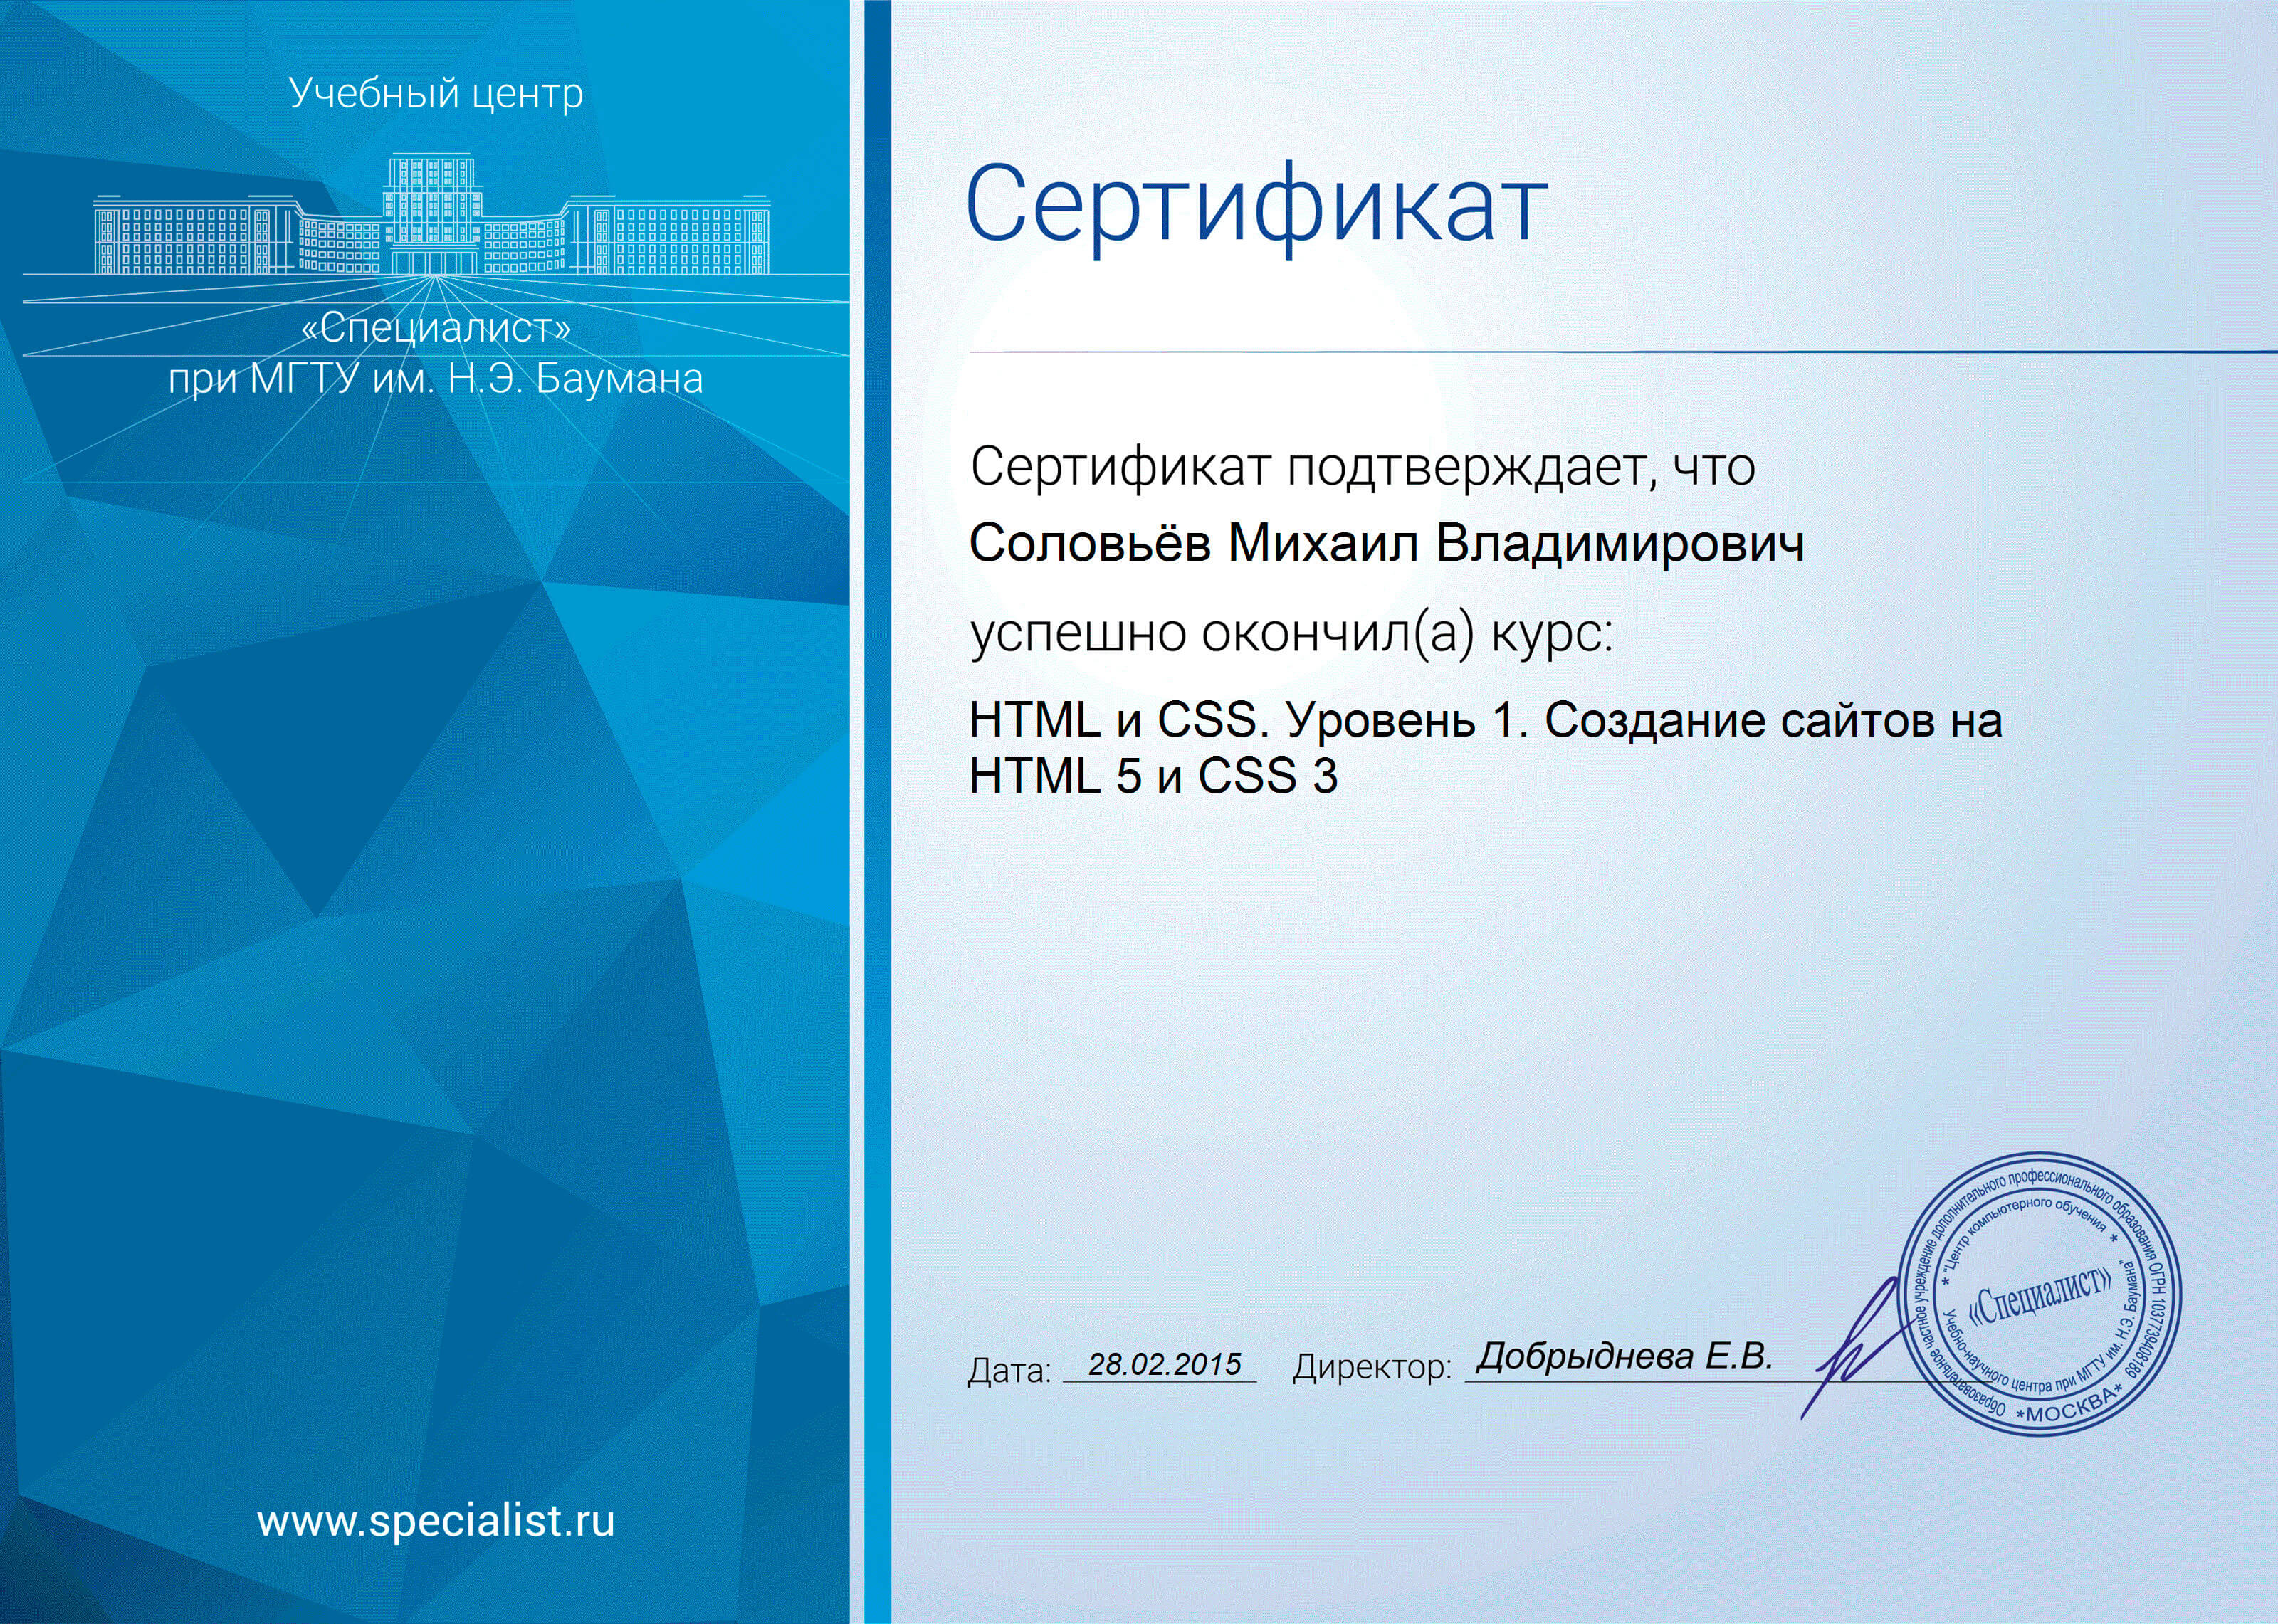 Сертификат “HTML и CSS уровень 1”